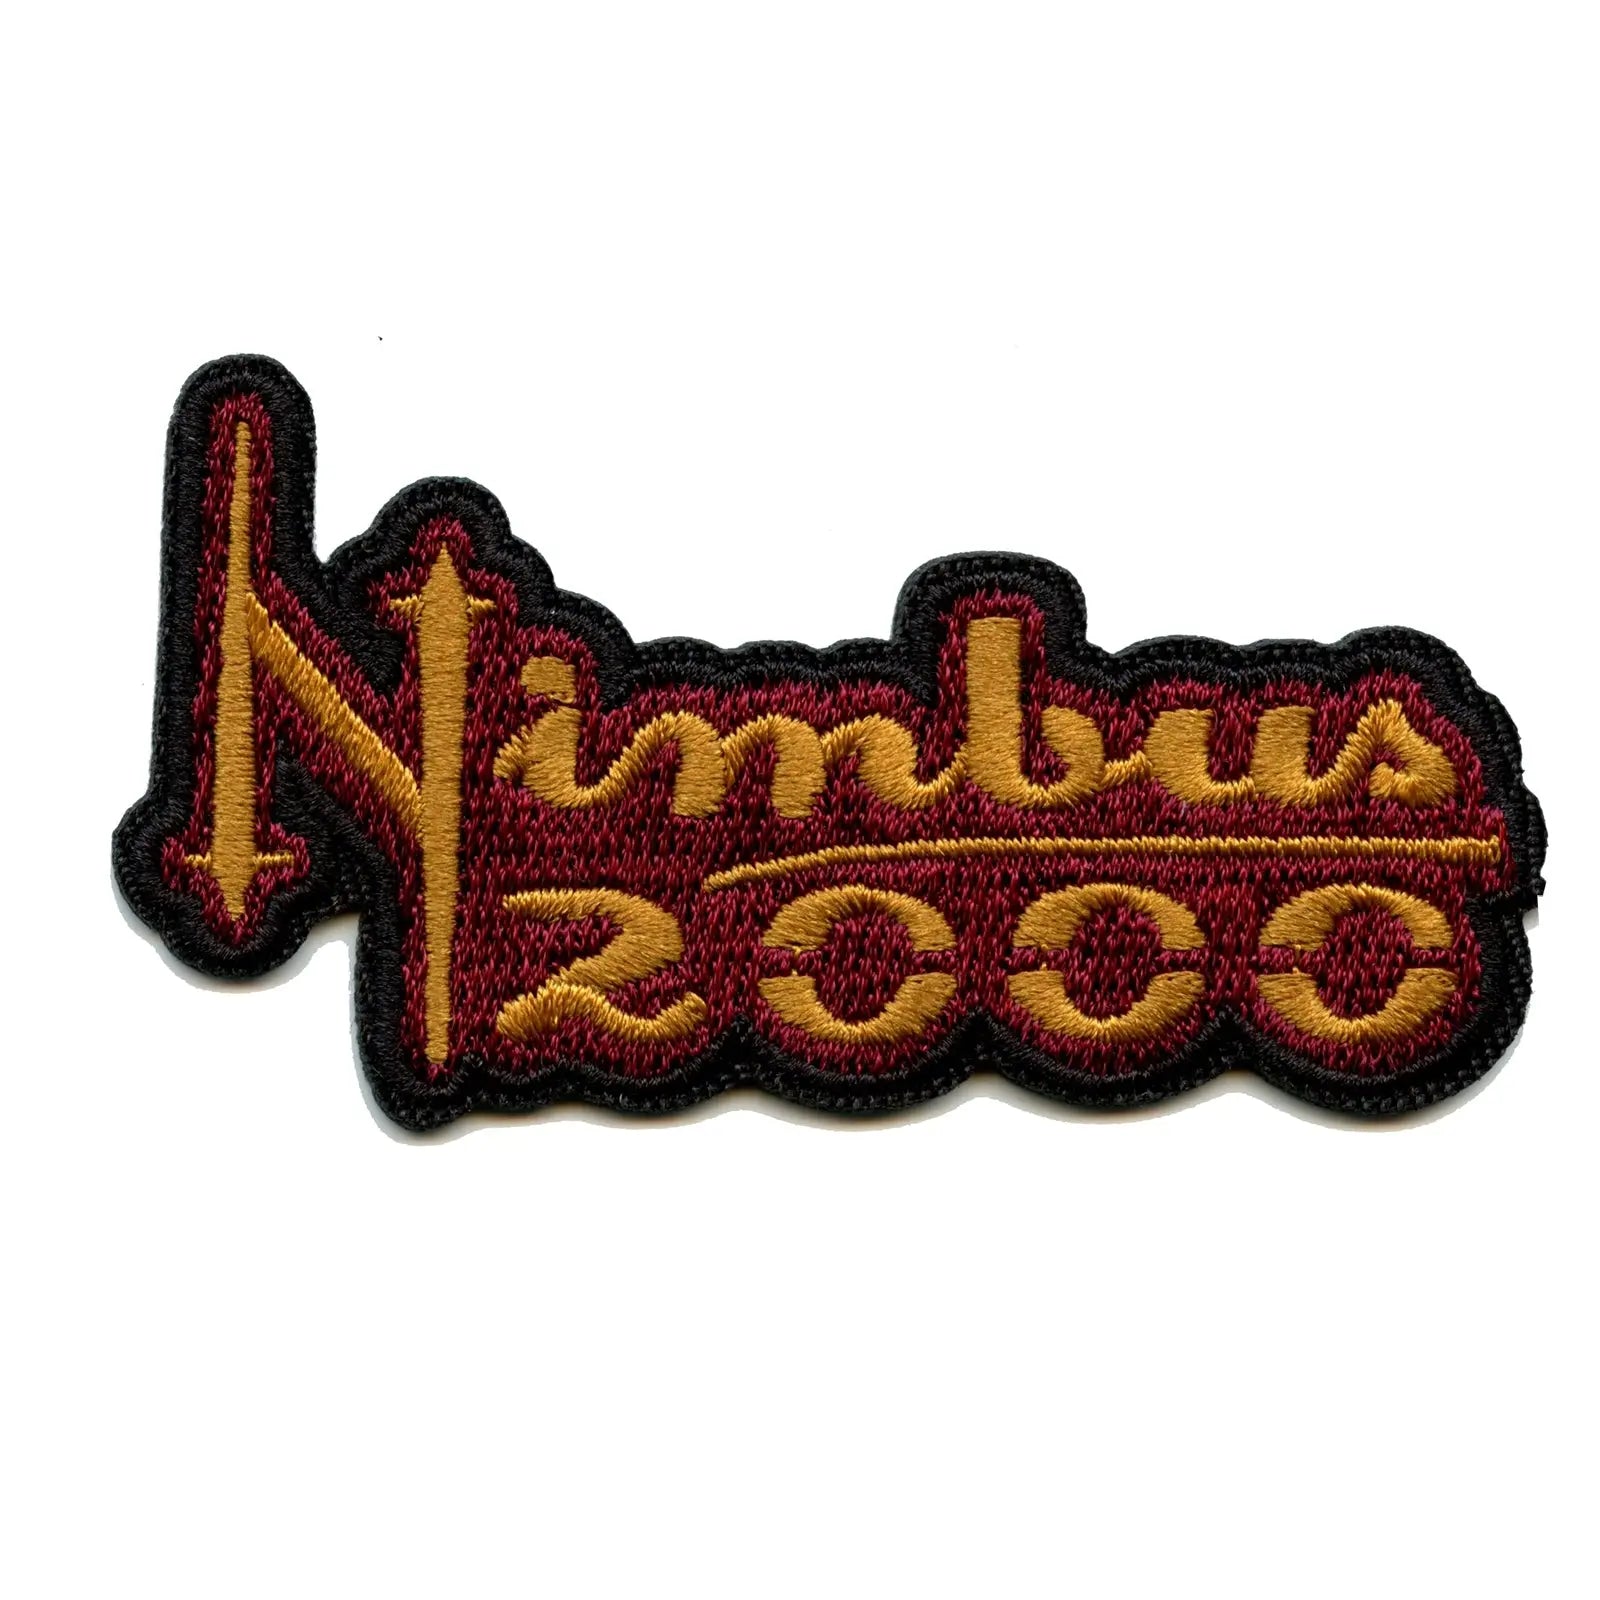 Harry Potter Nimbus 2000 Crest Logo Patch 